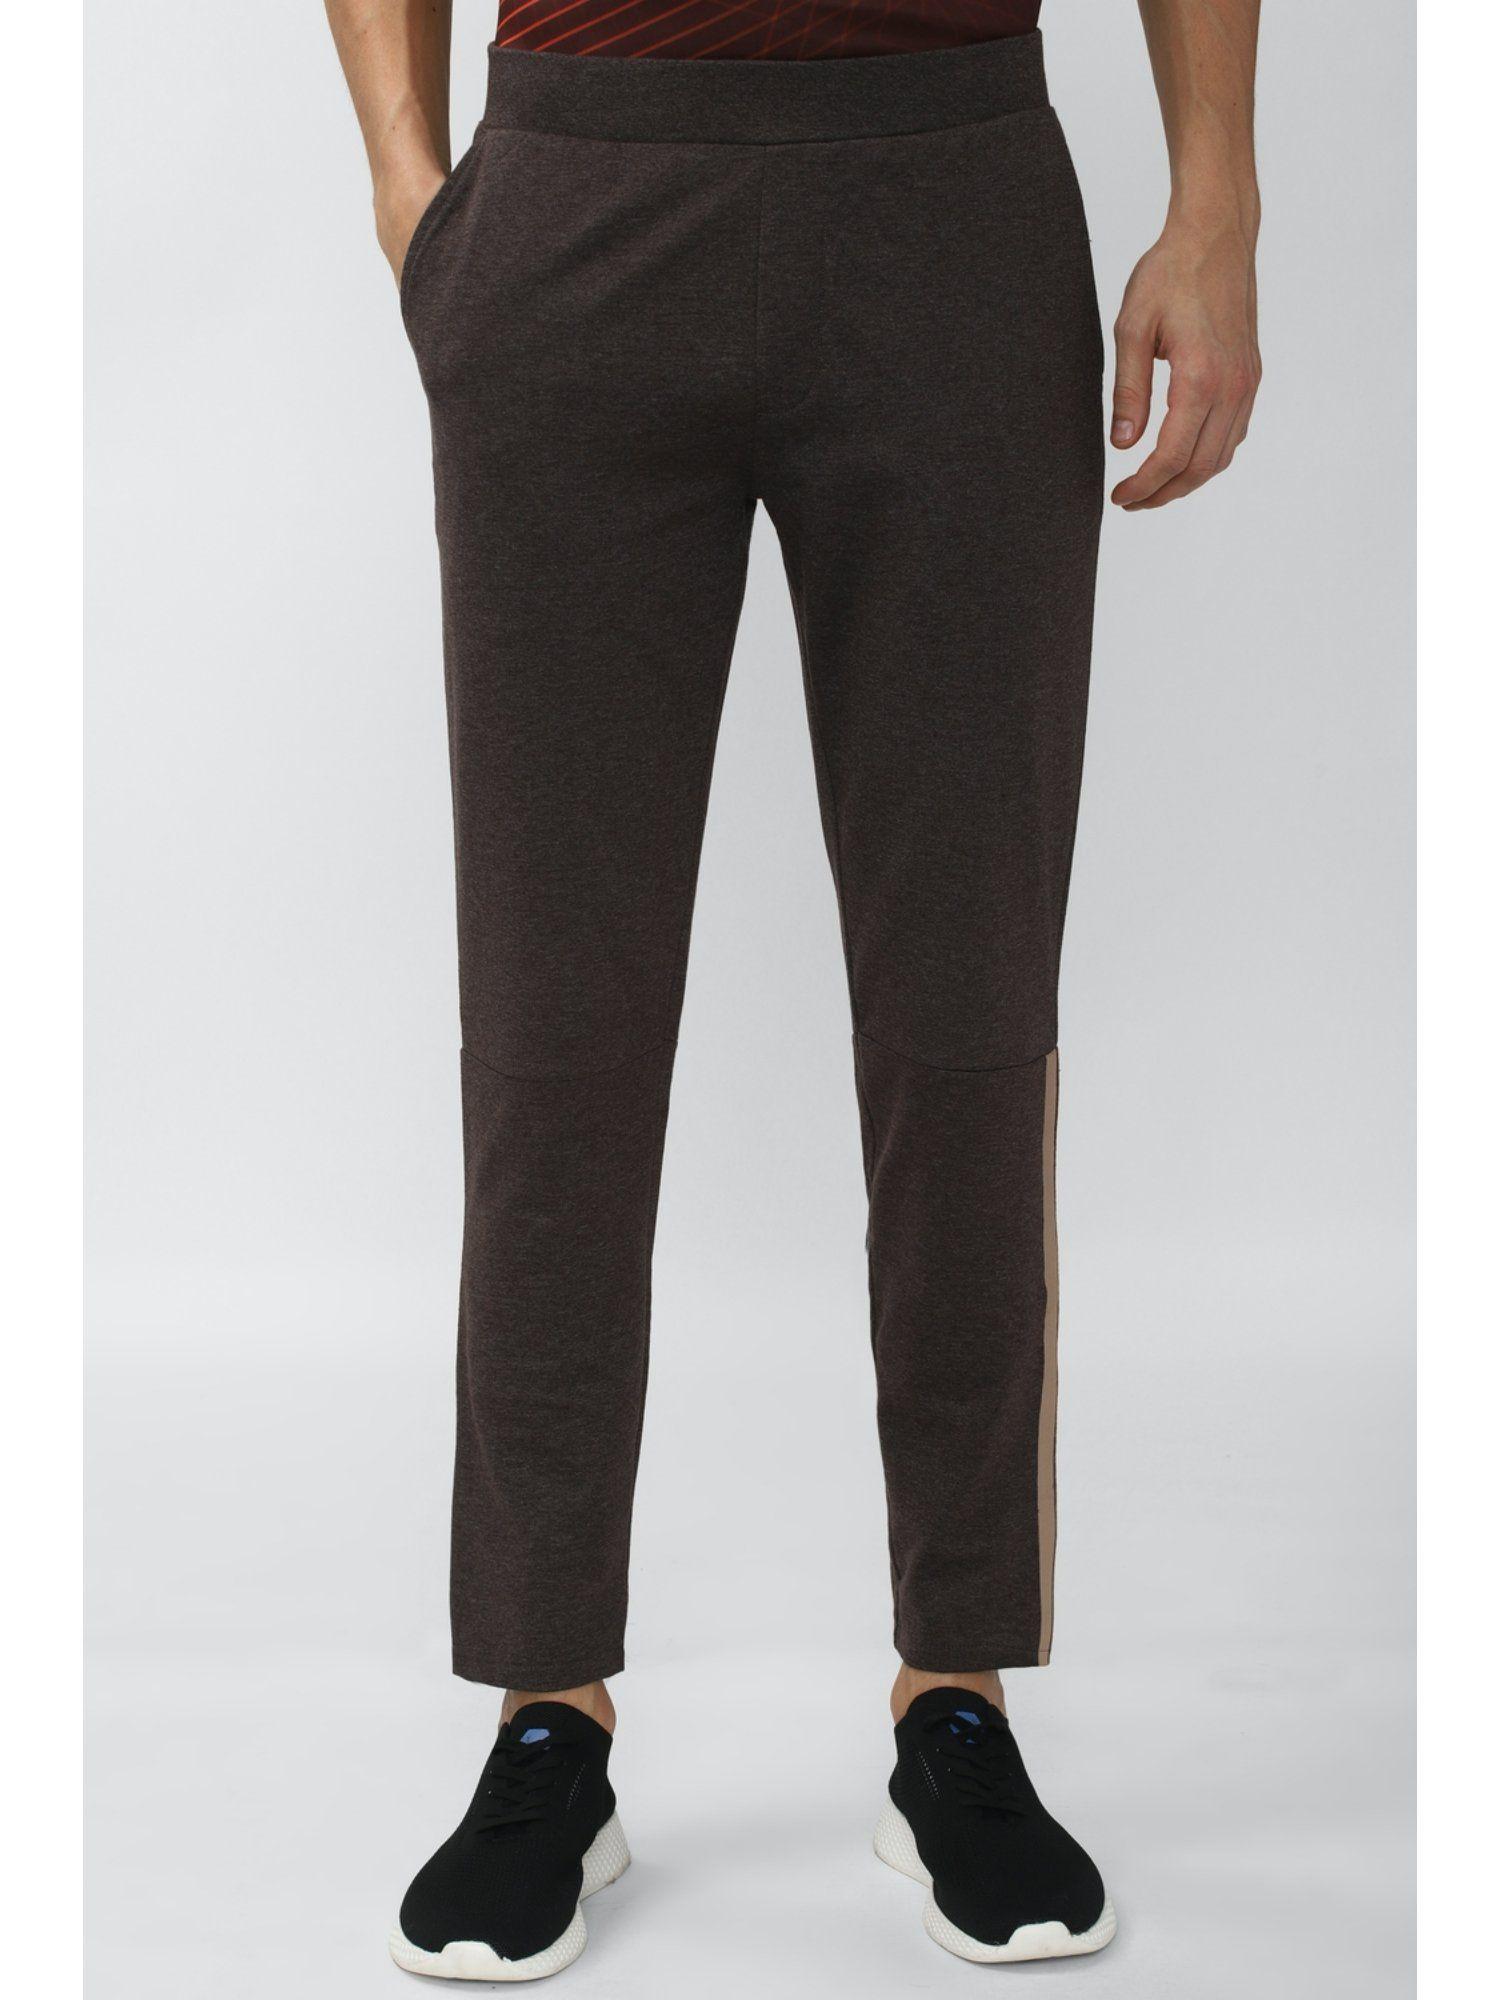 men-brown-track-pants